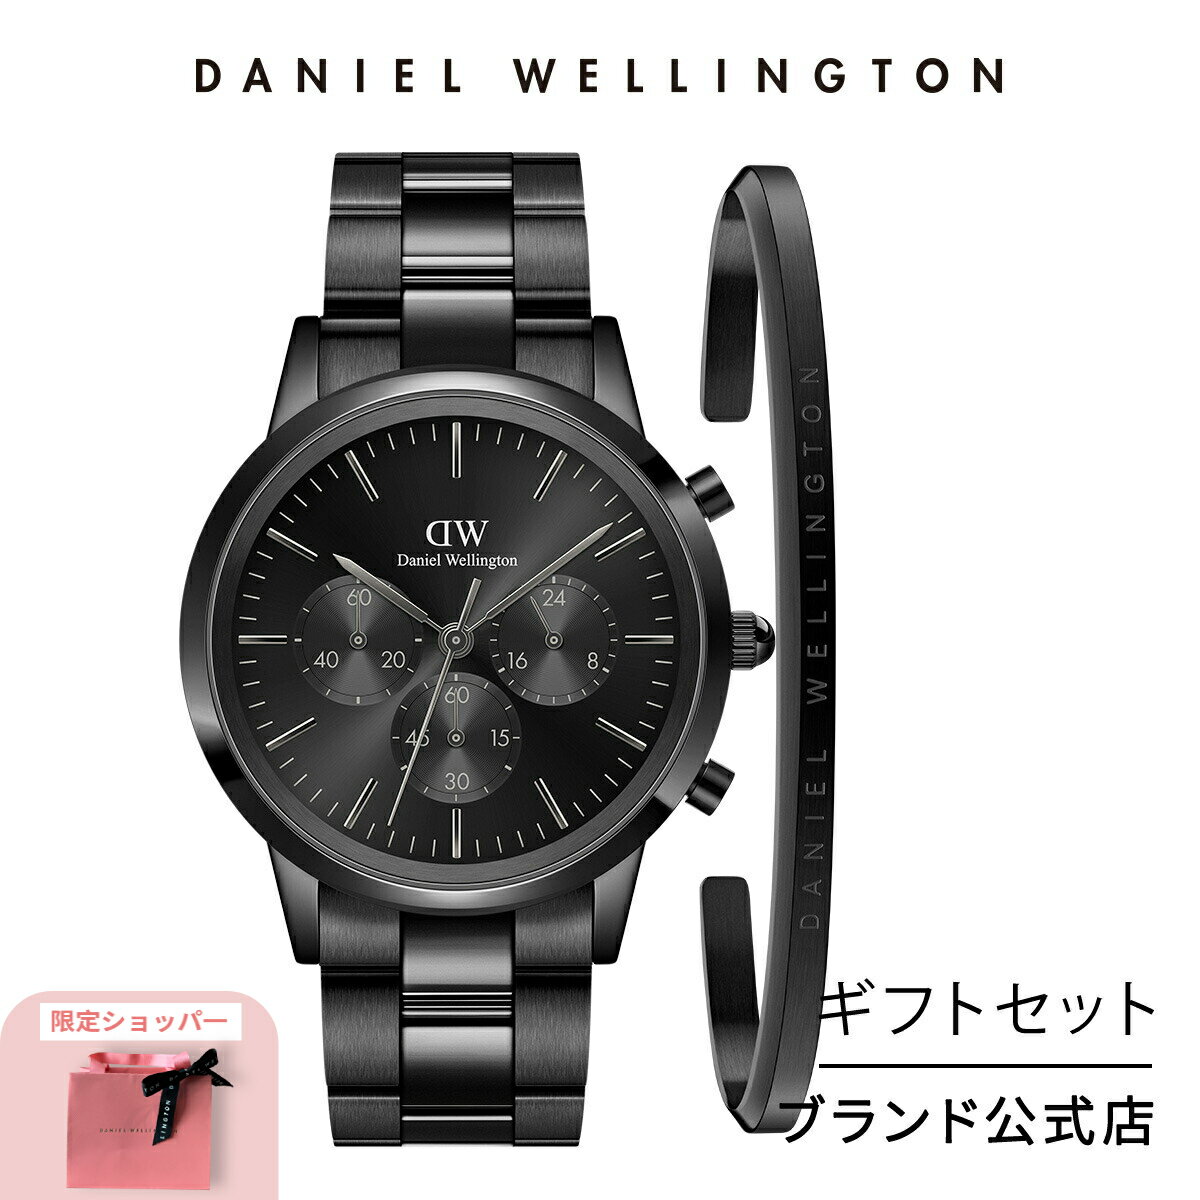 ギフトセット 男性 ダニエルウェリントン Daniel Wellington Iconic Chronograph 42 Link B Onyx + Classic Bracelet Black Large 時計 ブレスレット ブランド 20代 30代 ウォッチ バングル 大人 上品 おしゃれ ブラック ギフト プレゼント 祝い